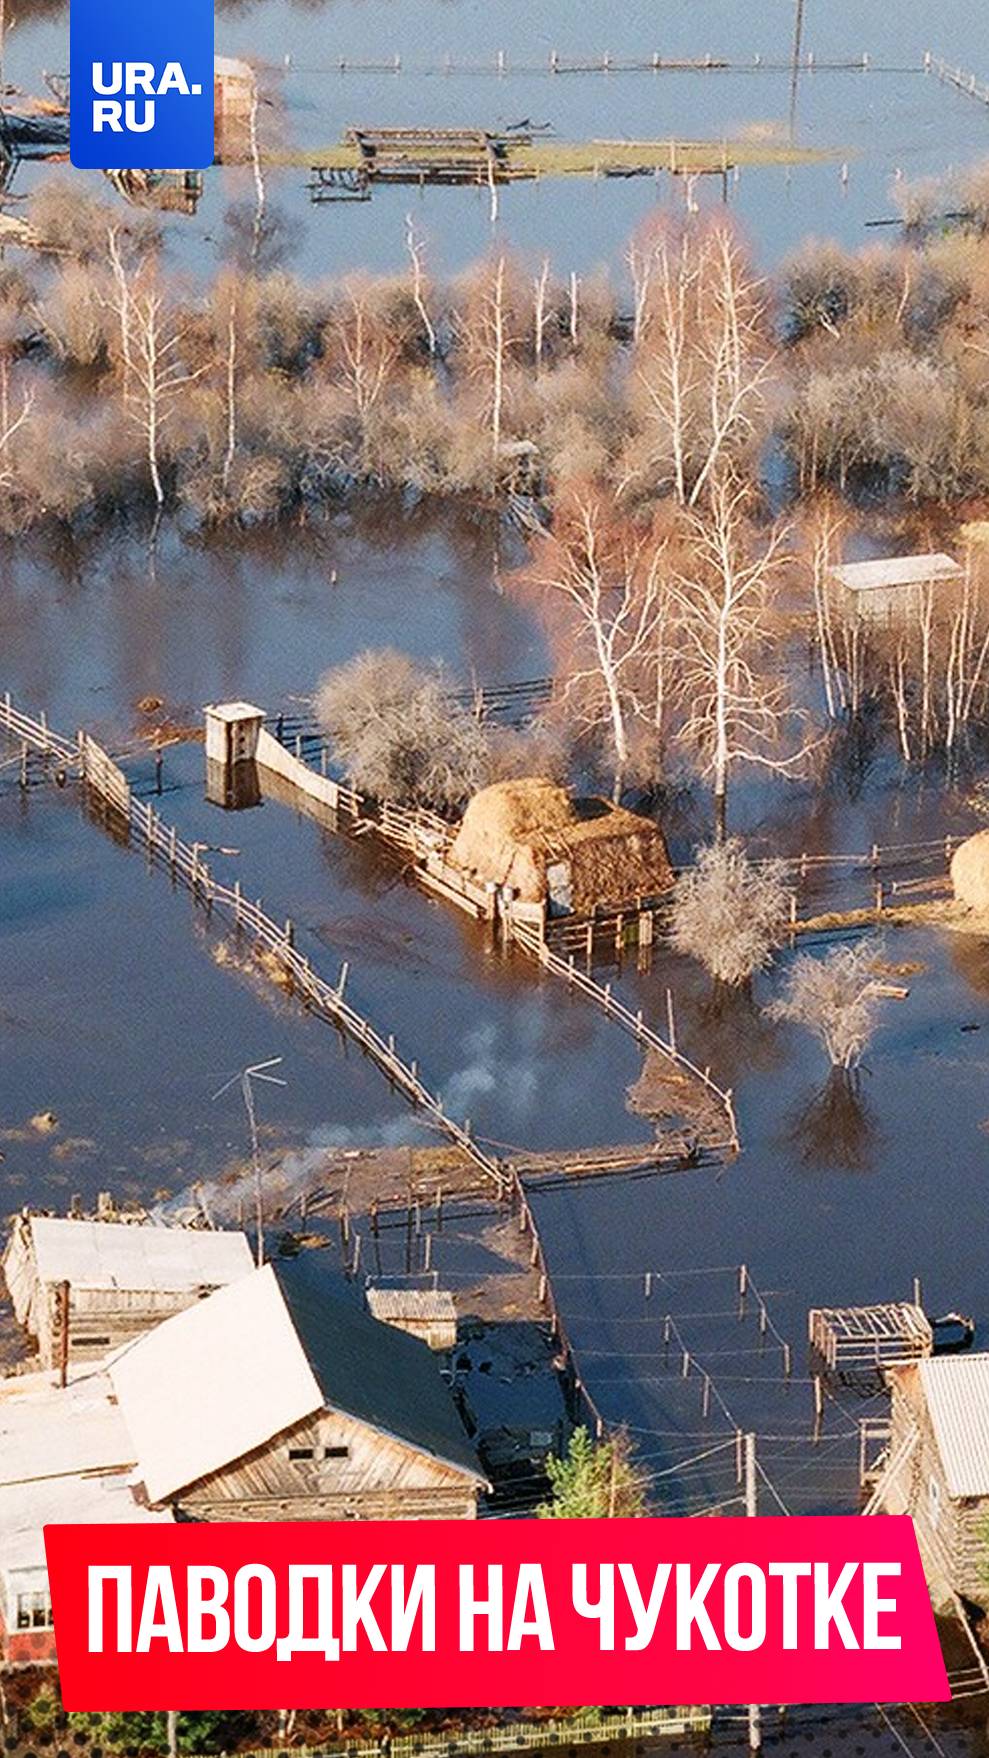 Уже более 50 человек эвакуировали из-за бедствия на Чукотке